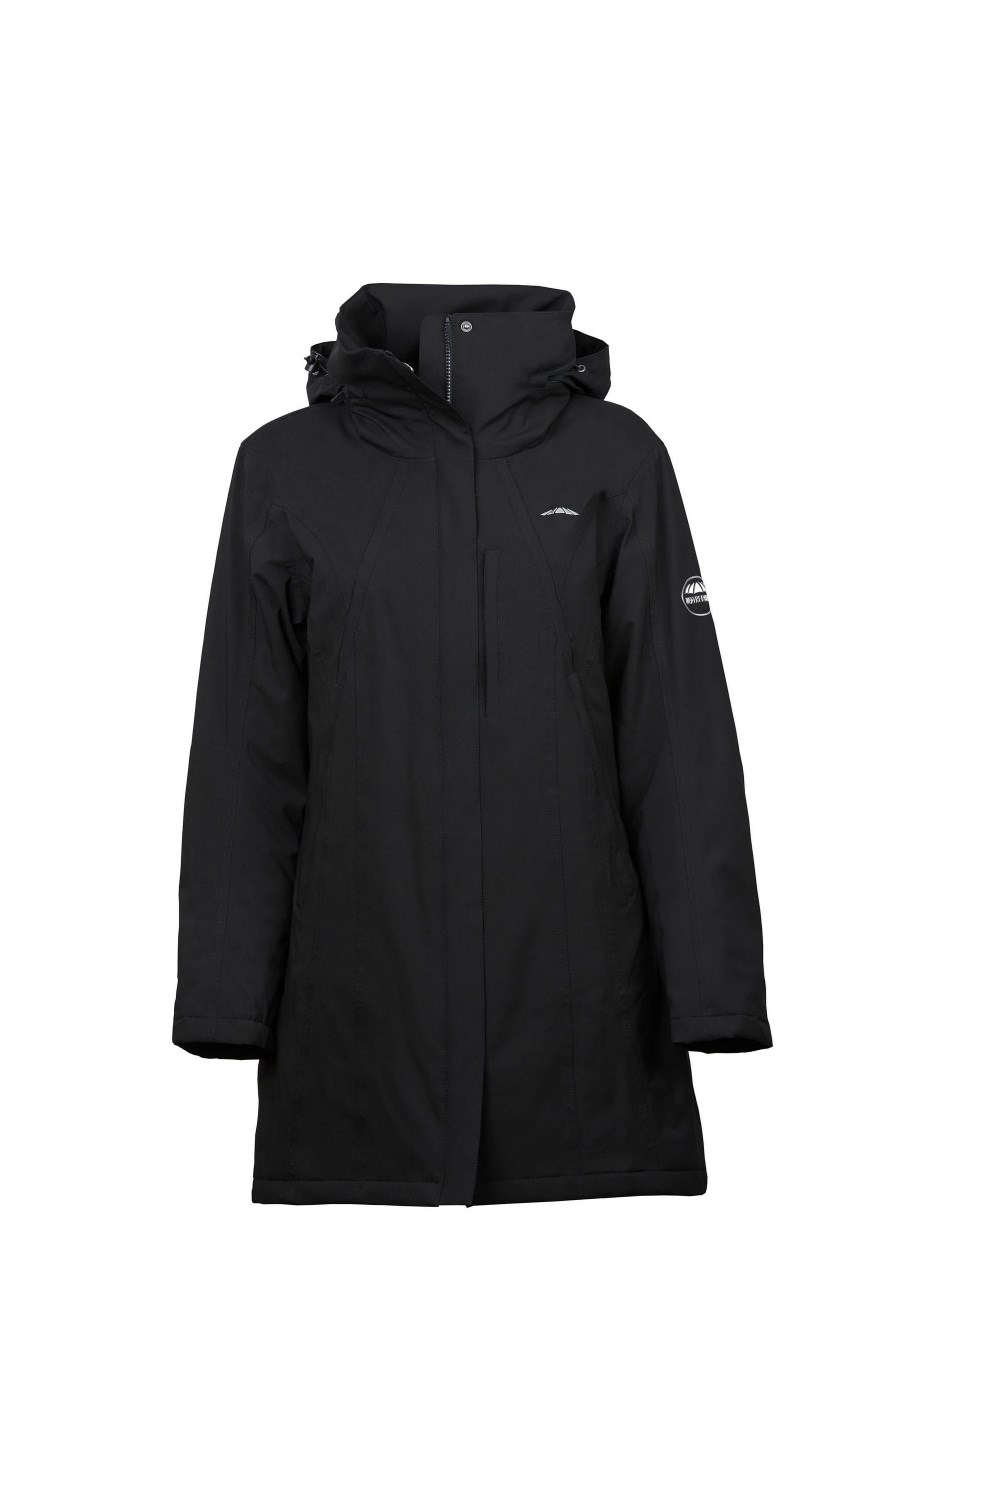 Kyla Womens Waterproof Jacket -